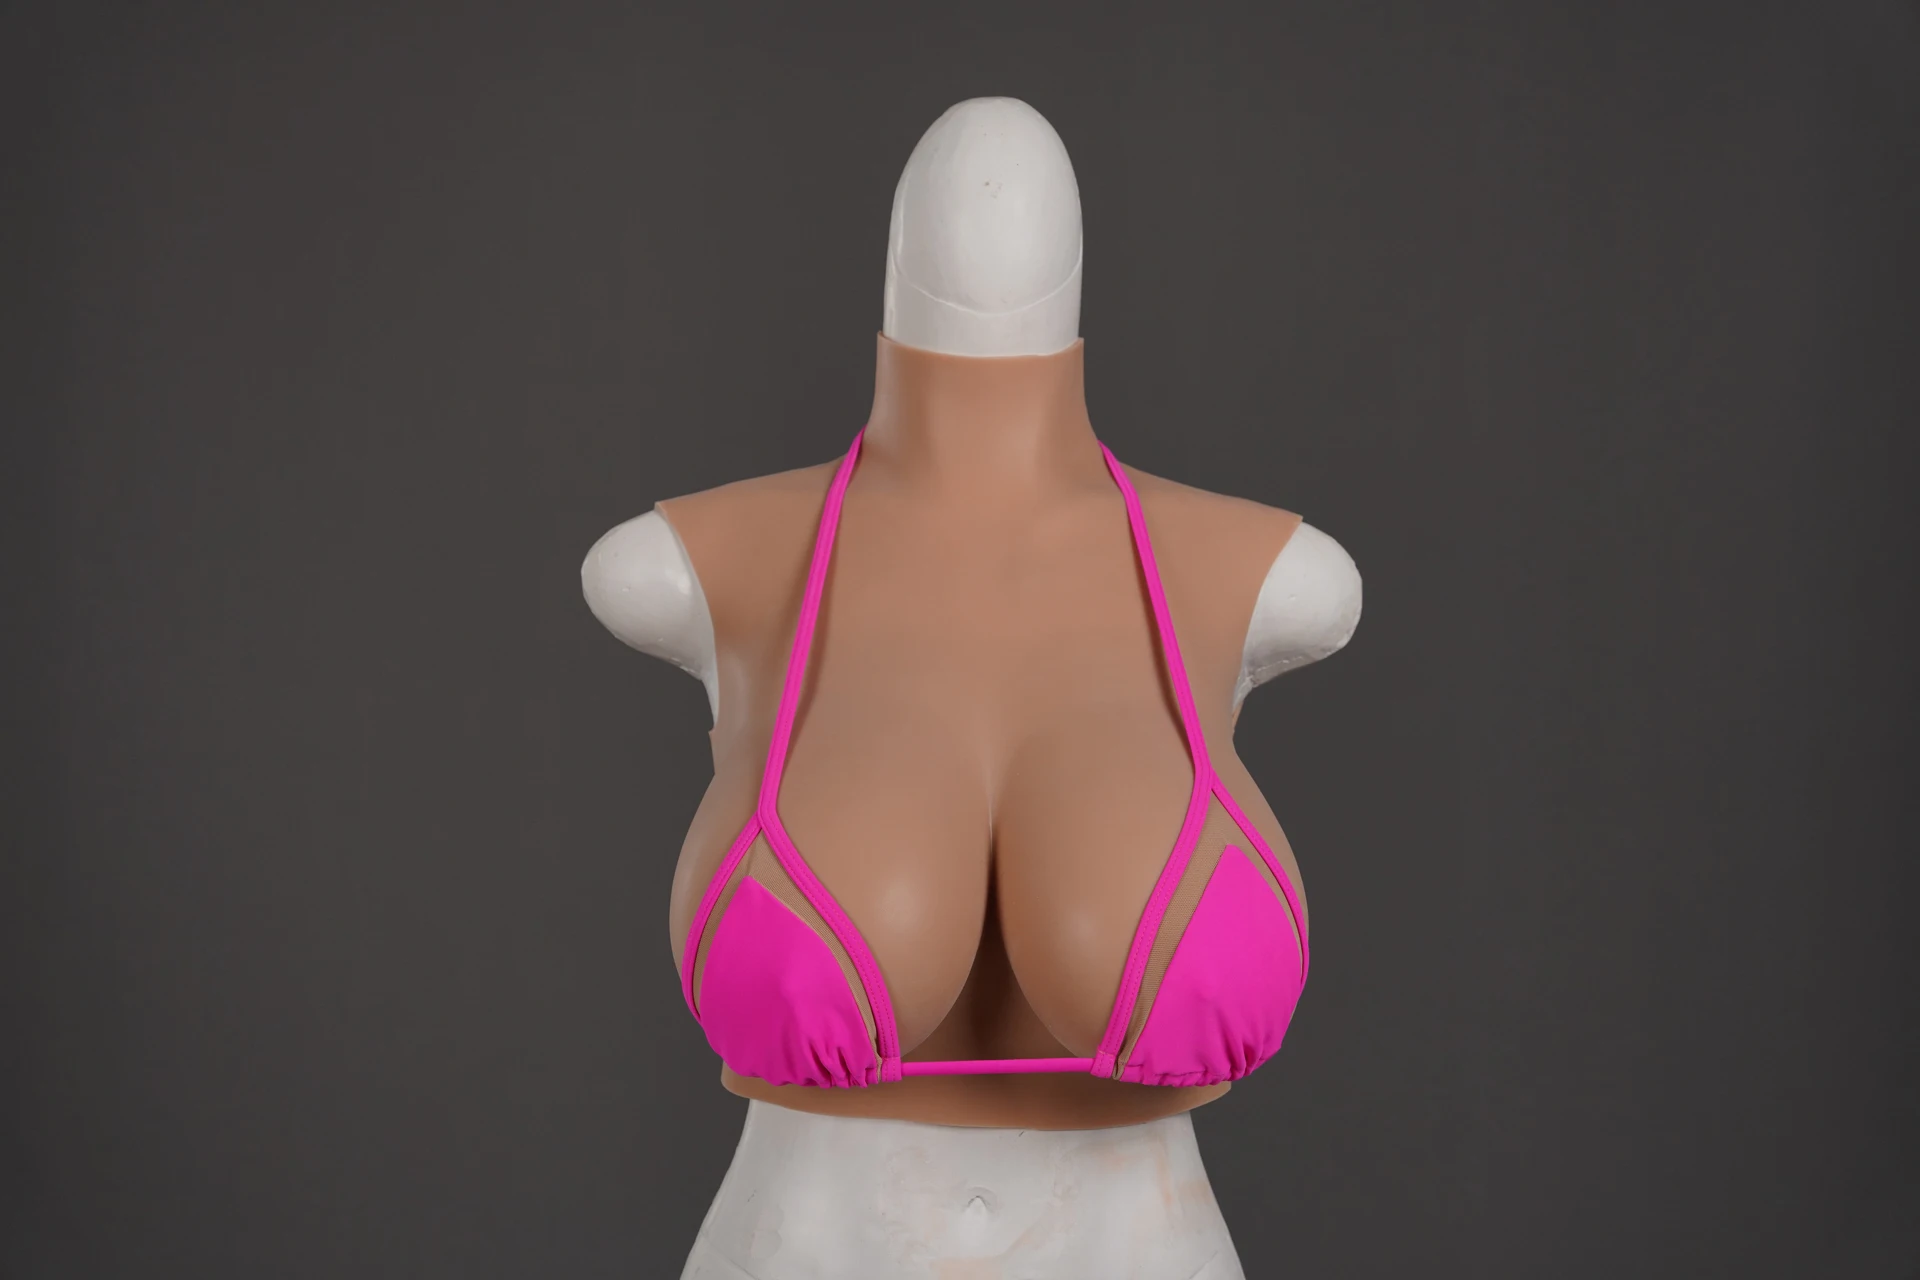 nova-atualizacao-abcdeg-colar-alto-falso-artificial-mama-formas-de-silicone-realista-travestis-transgenero-travesti-travestis-rainha